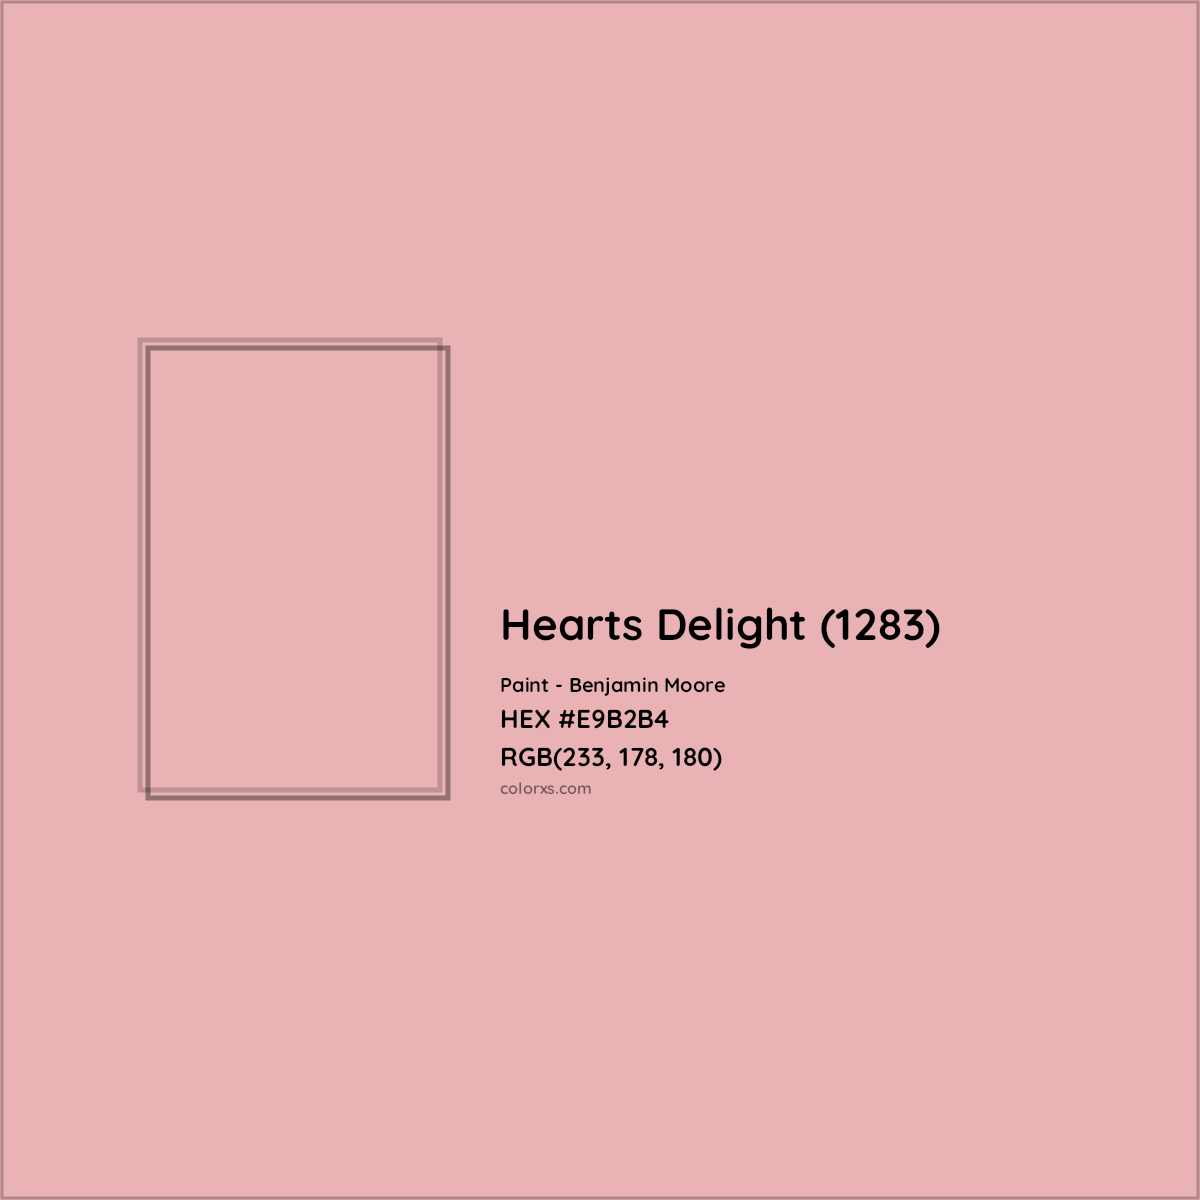 HEX #E9B2B4 Hearts Delight (1283) Paint Benjamin Moore - Color Code